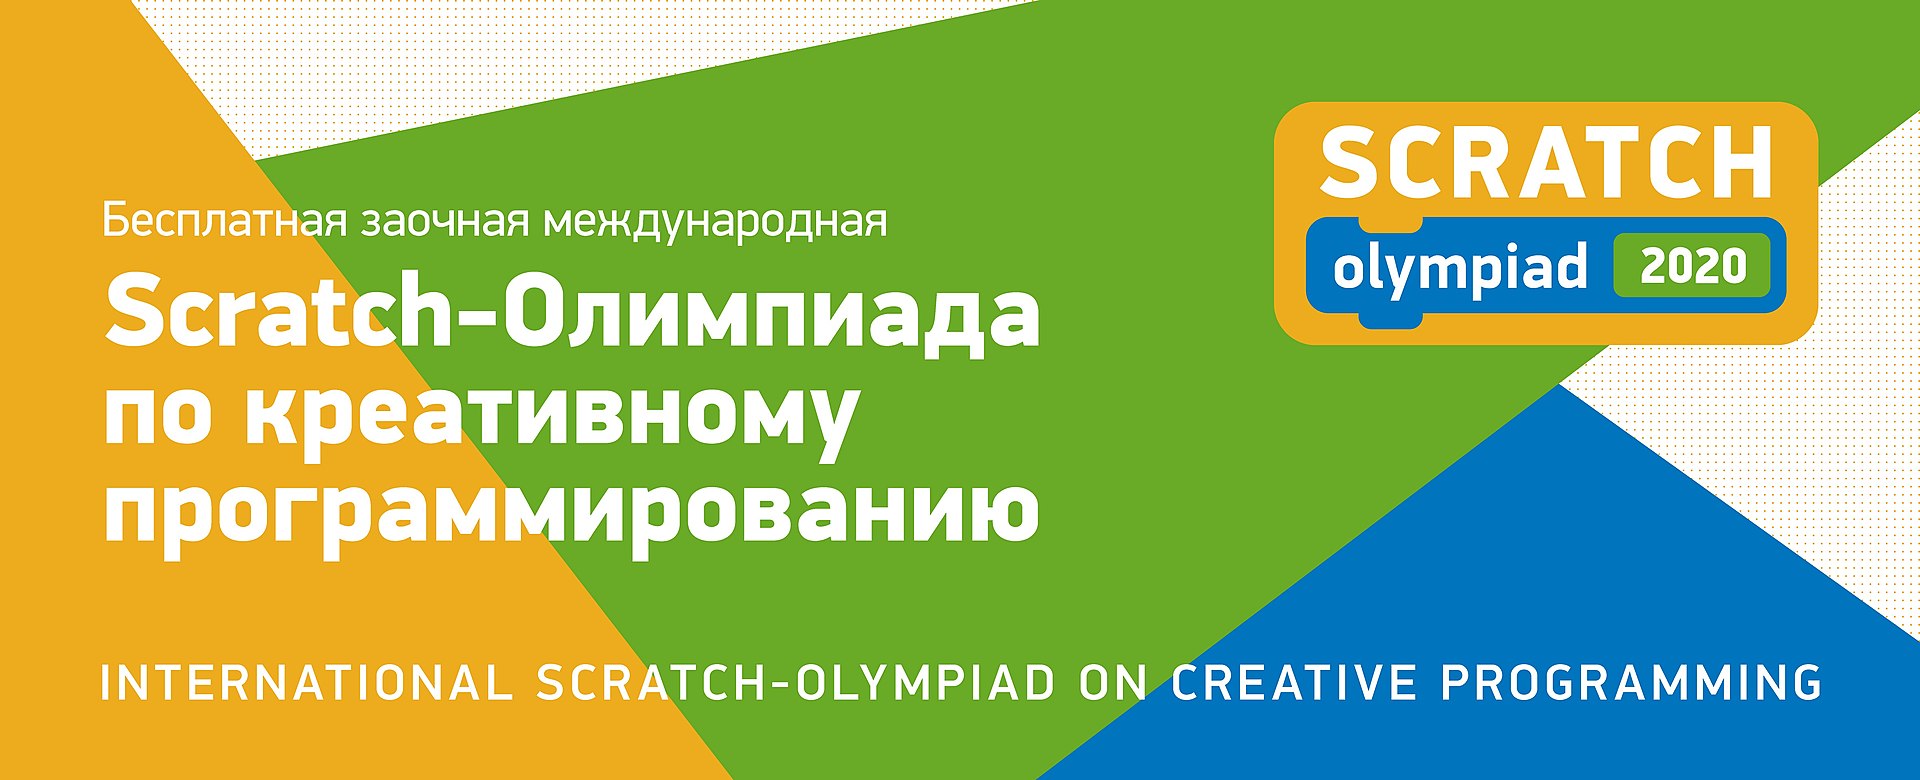 Кружковое движение НТИ и «РОББО» приглашают школьников на олимпиаду по креативному программированию